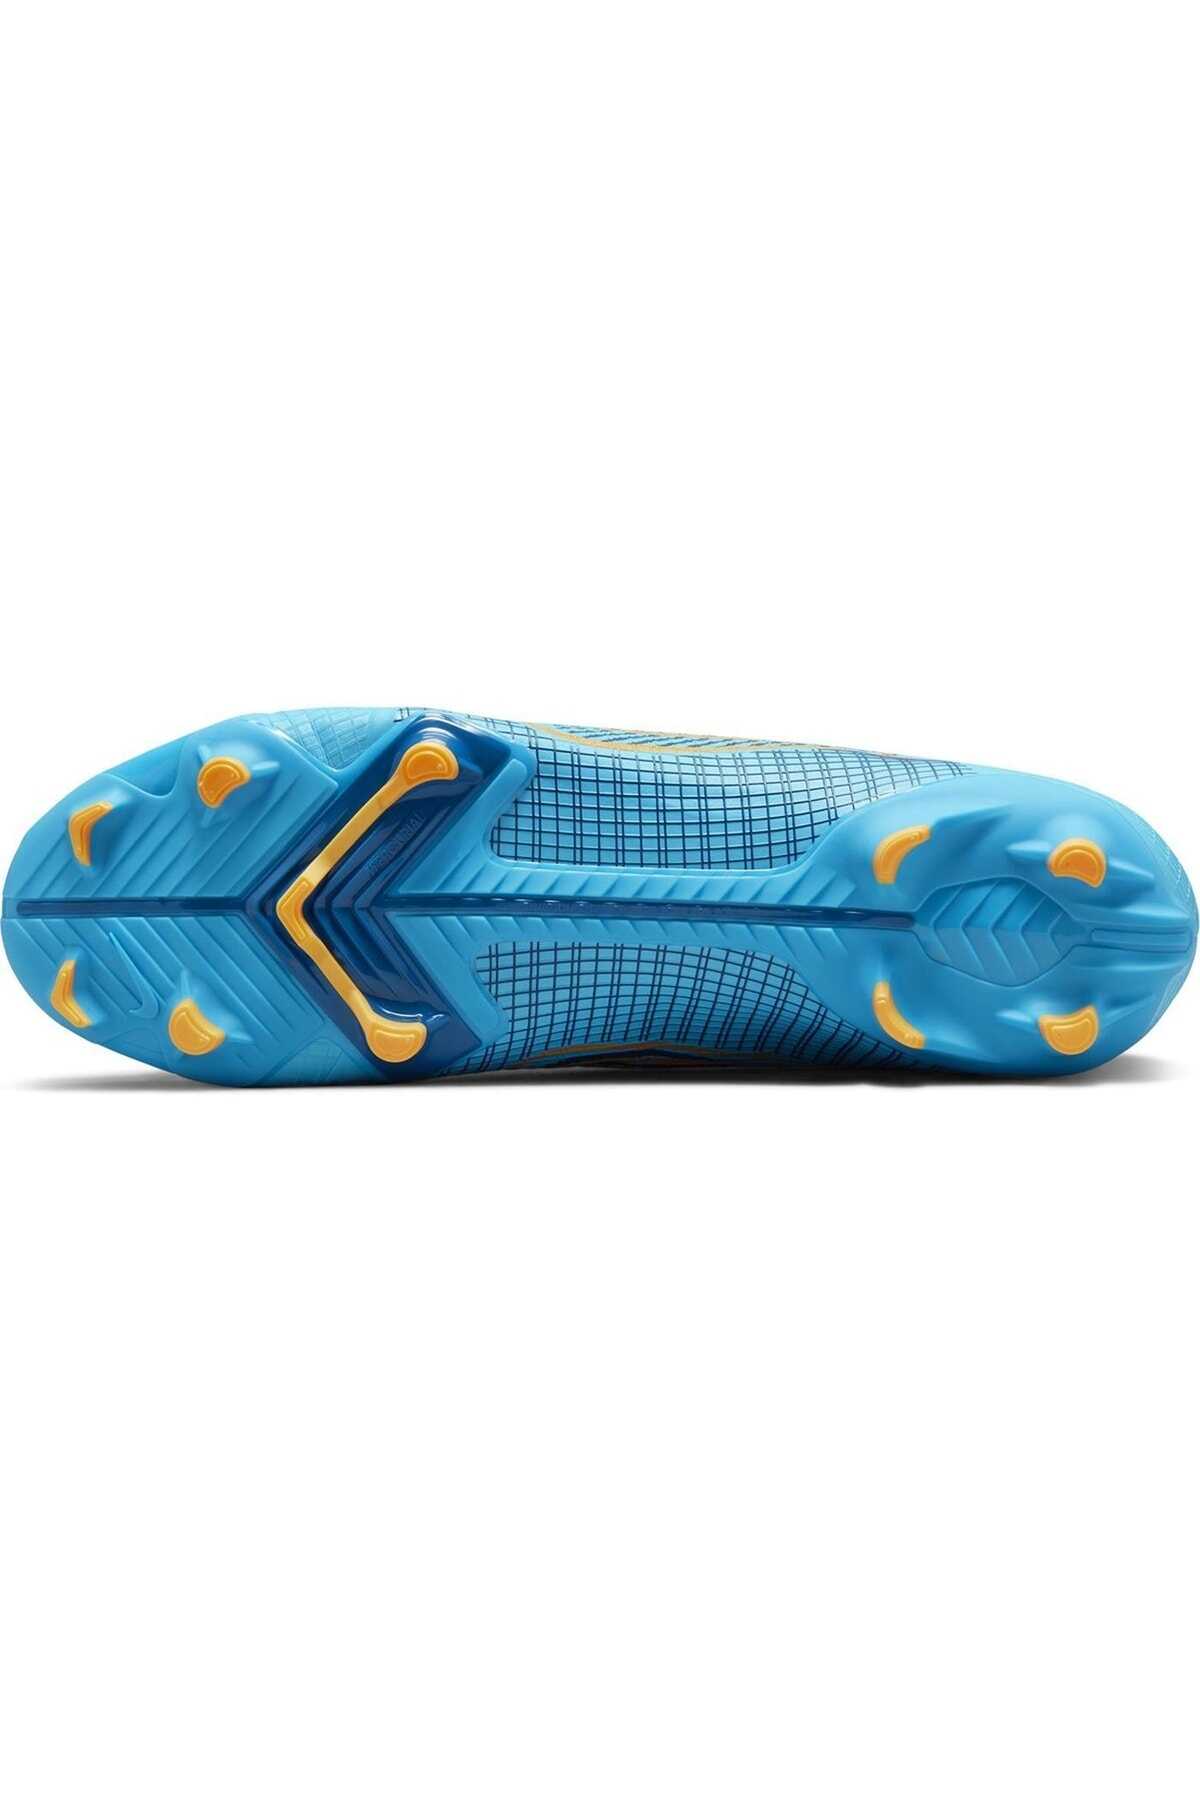 کفش استوک چمن مردانه آبی فیروزه ای مدل DJ2869-484 برند Nike 